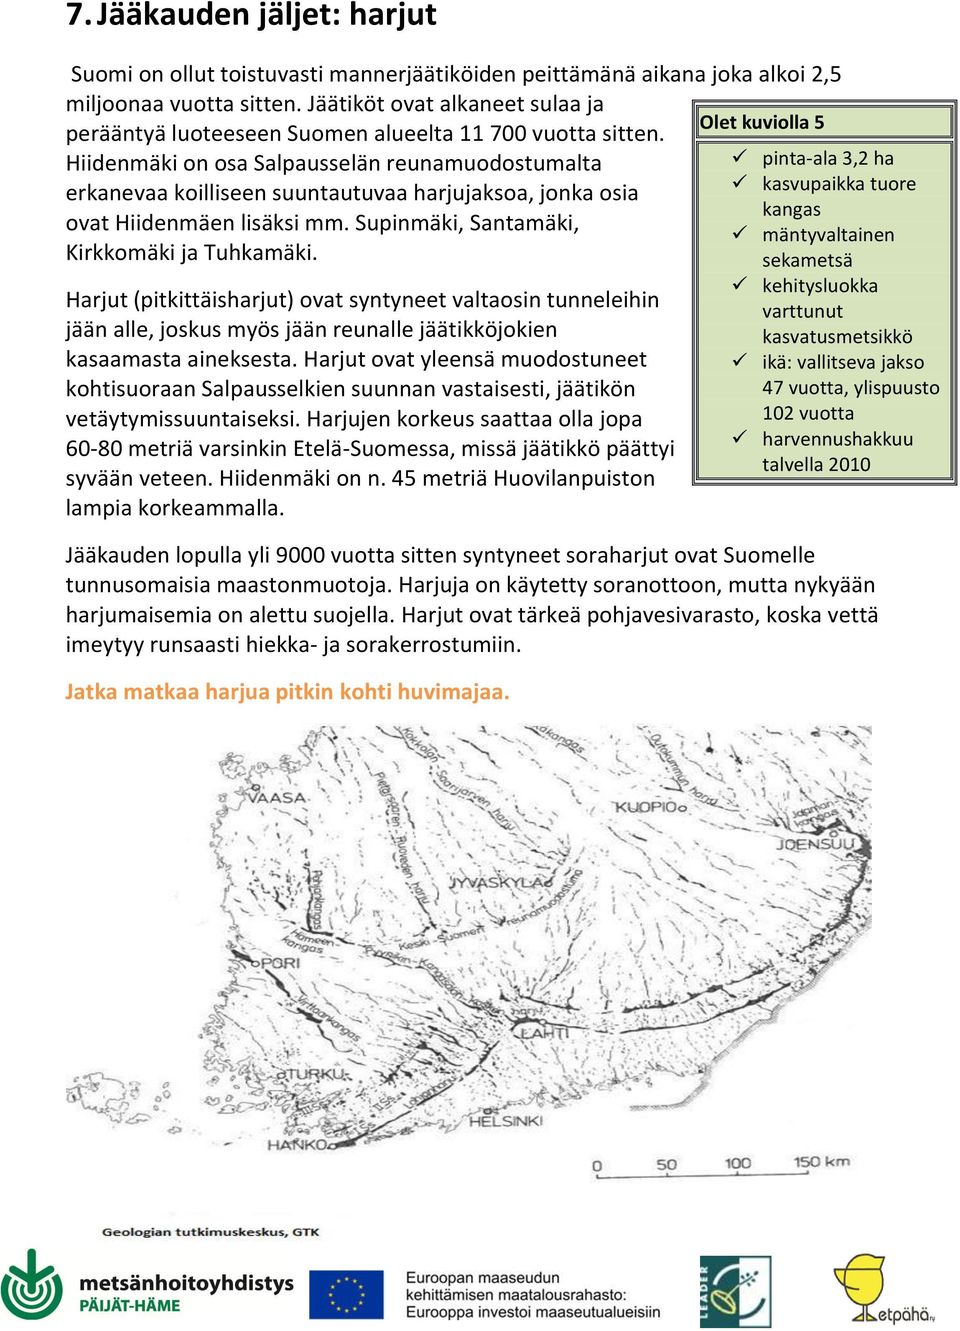 Hiidenmäki on osa Salpausselän reunamuodostumalta erkanevaa koilliseen suuntautuvaa harjujaksoa, jonka osia ovat Hiidenmäen lisäksi mm. Supinmäki, Santamäki, Kirkkomäki ja Tuhkamäki.